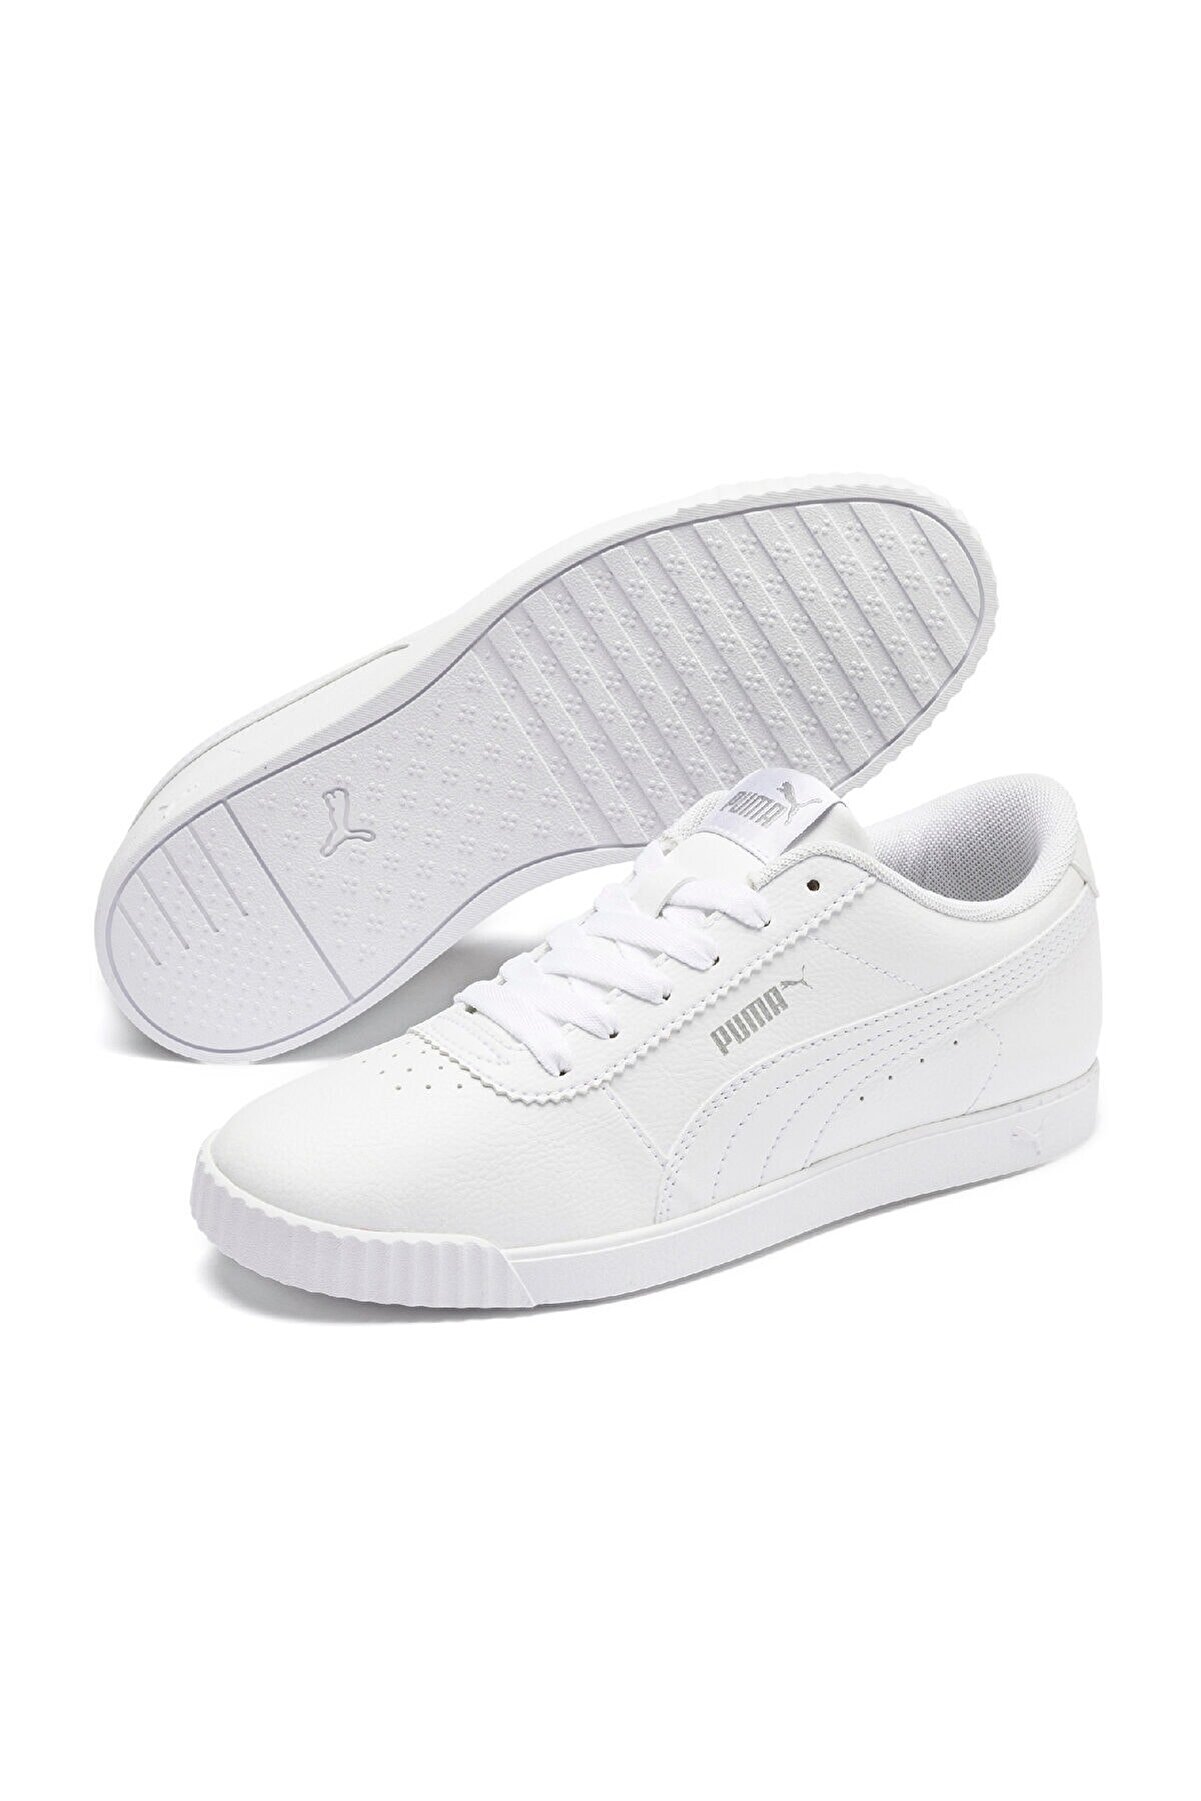 Puma CARINA SLIM SL Beyaz Kadın Sneaker Ayakkabı 100480305